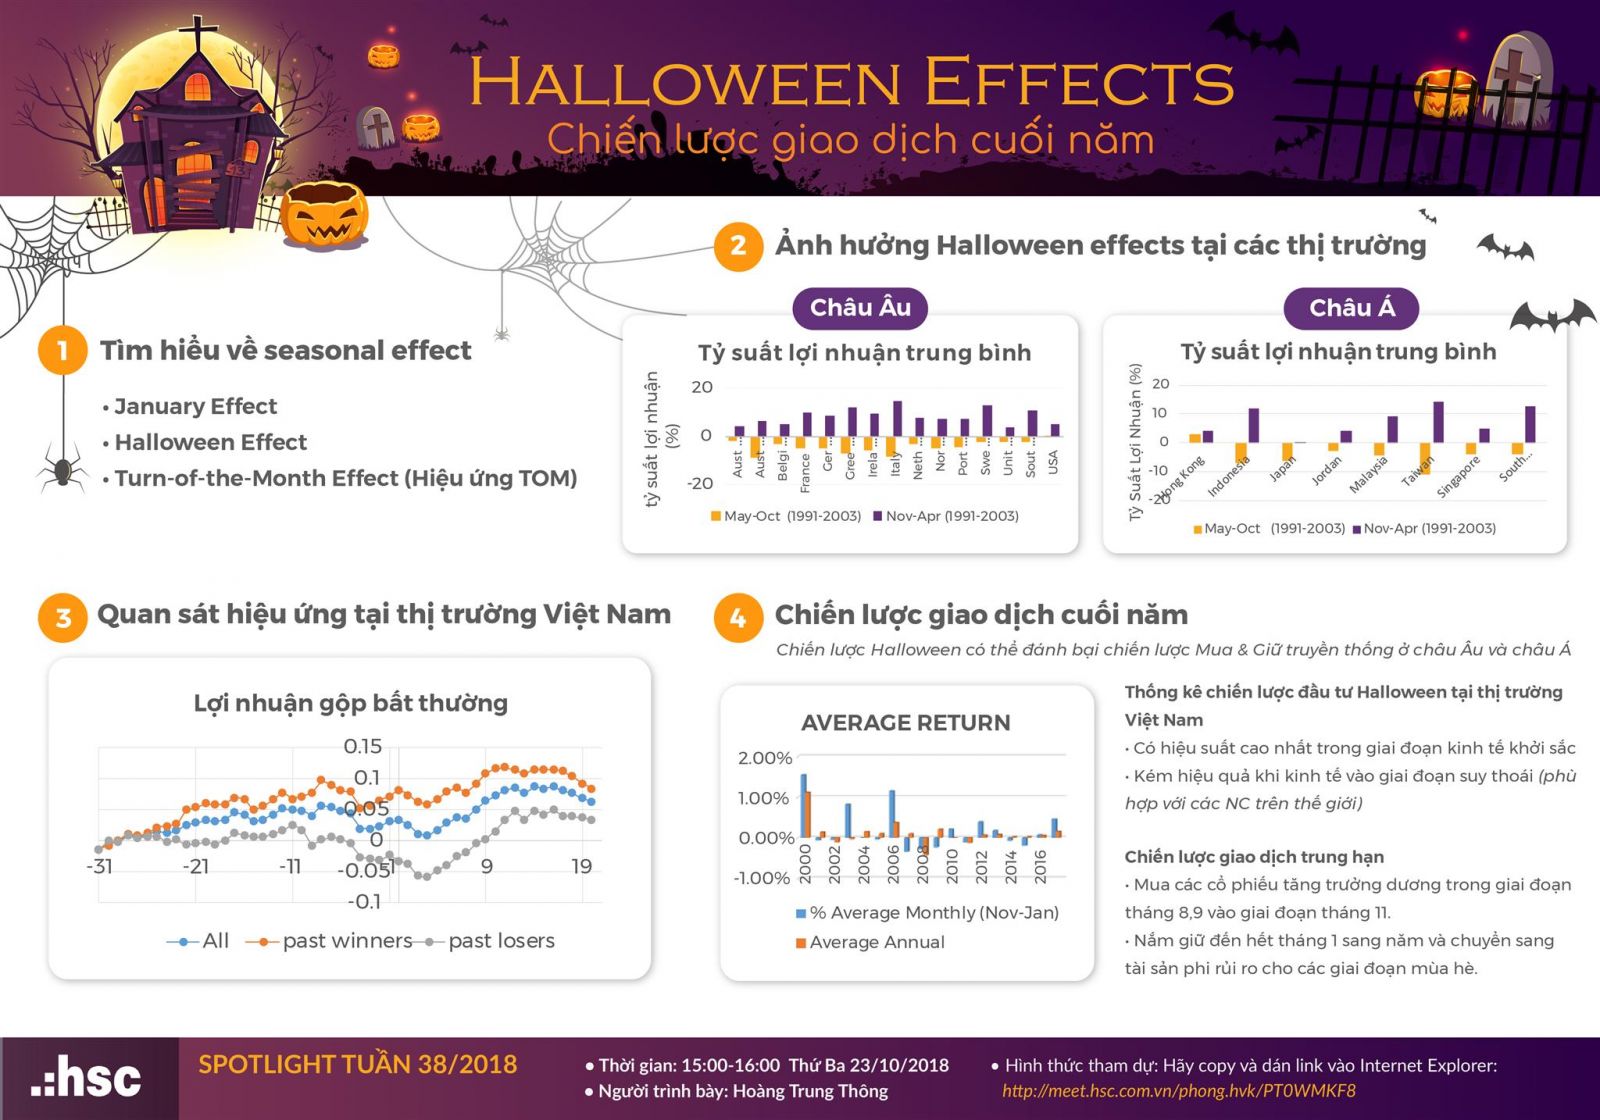 Halloween Effects - Chiến lược giao dịch cuối năm